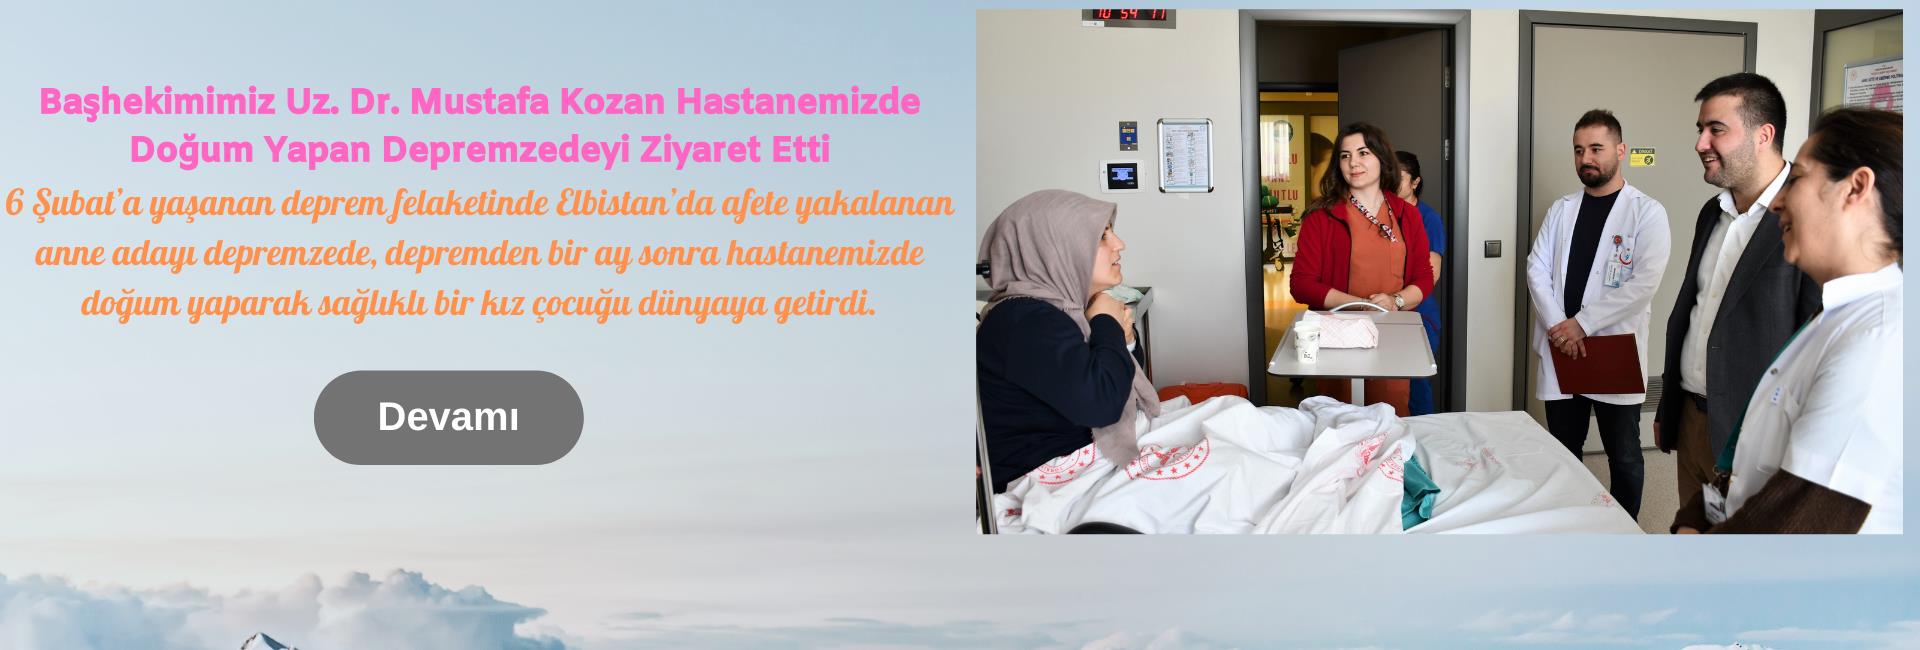 Başhekimimiz Uz. Dr. Mustafa Kozan Hastanemizde Doğum Yapan Depremzedeyi Ziyaret Etti